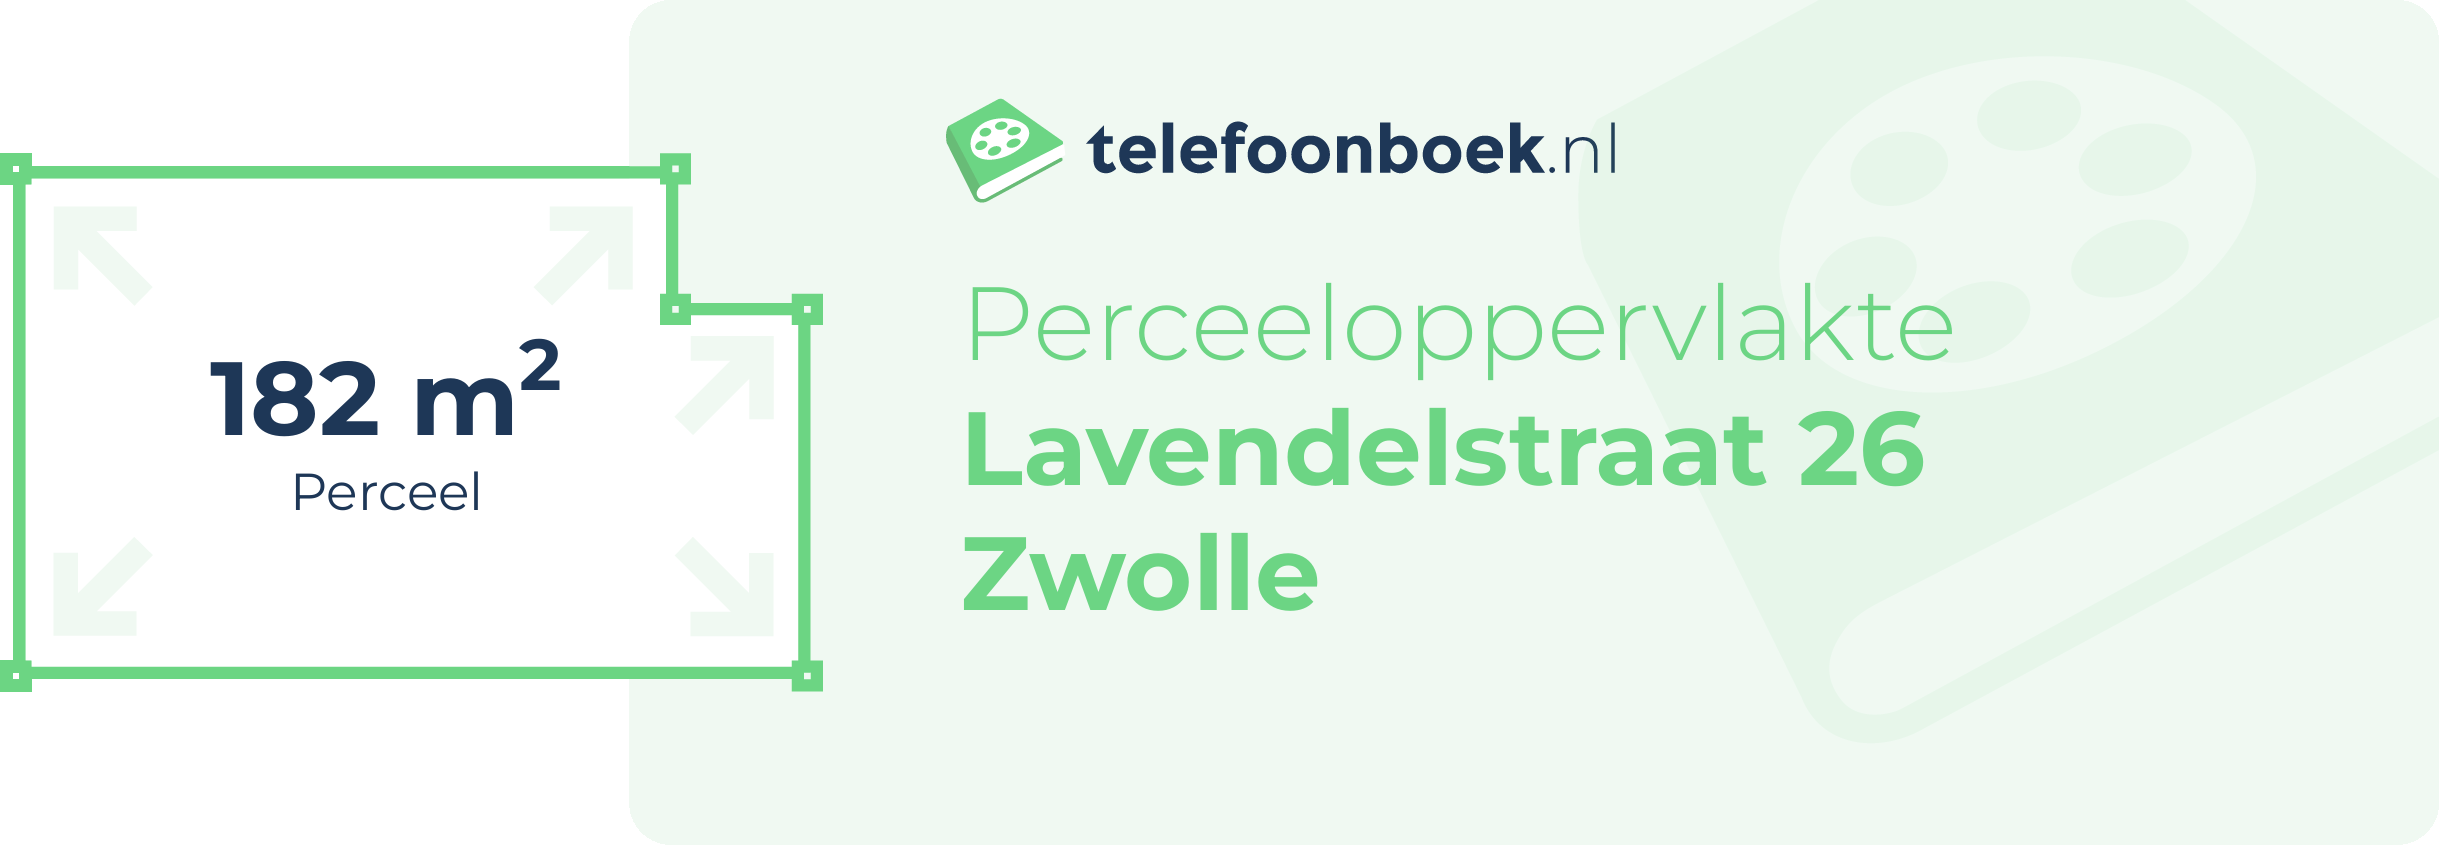 Perceeloppervlakte Lavendelstraat 26 Zwolle